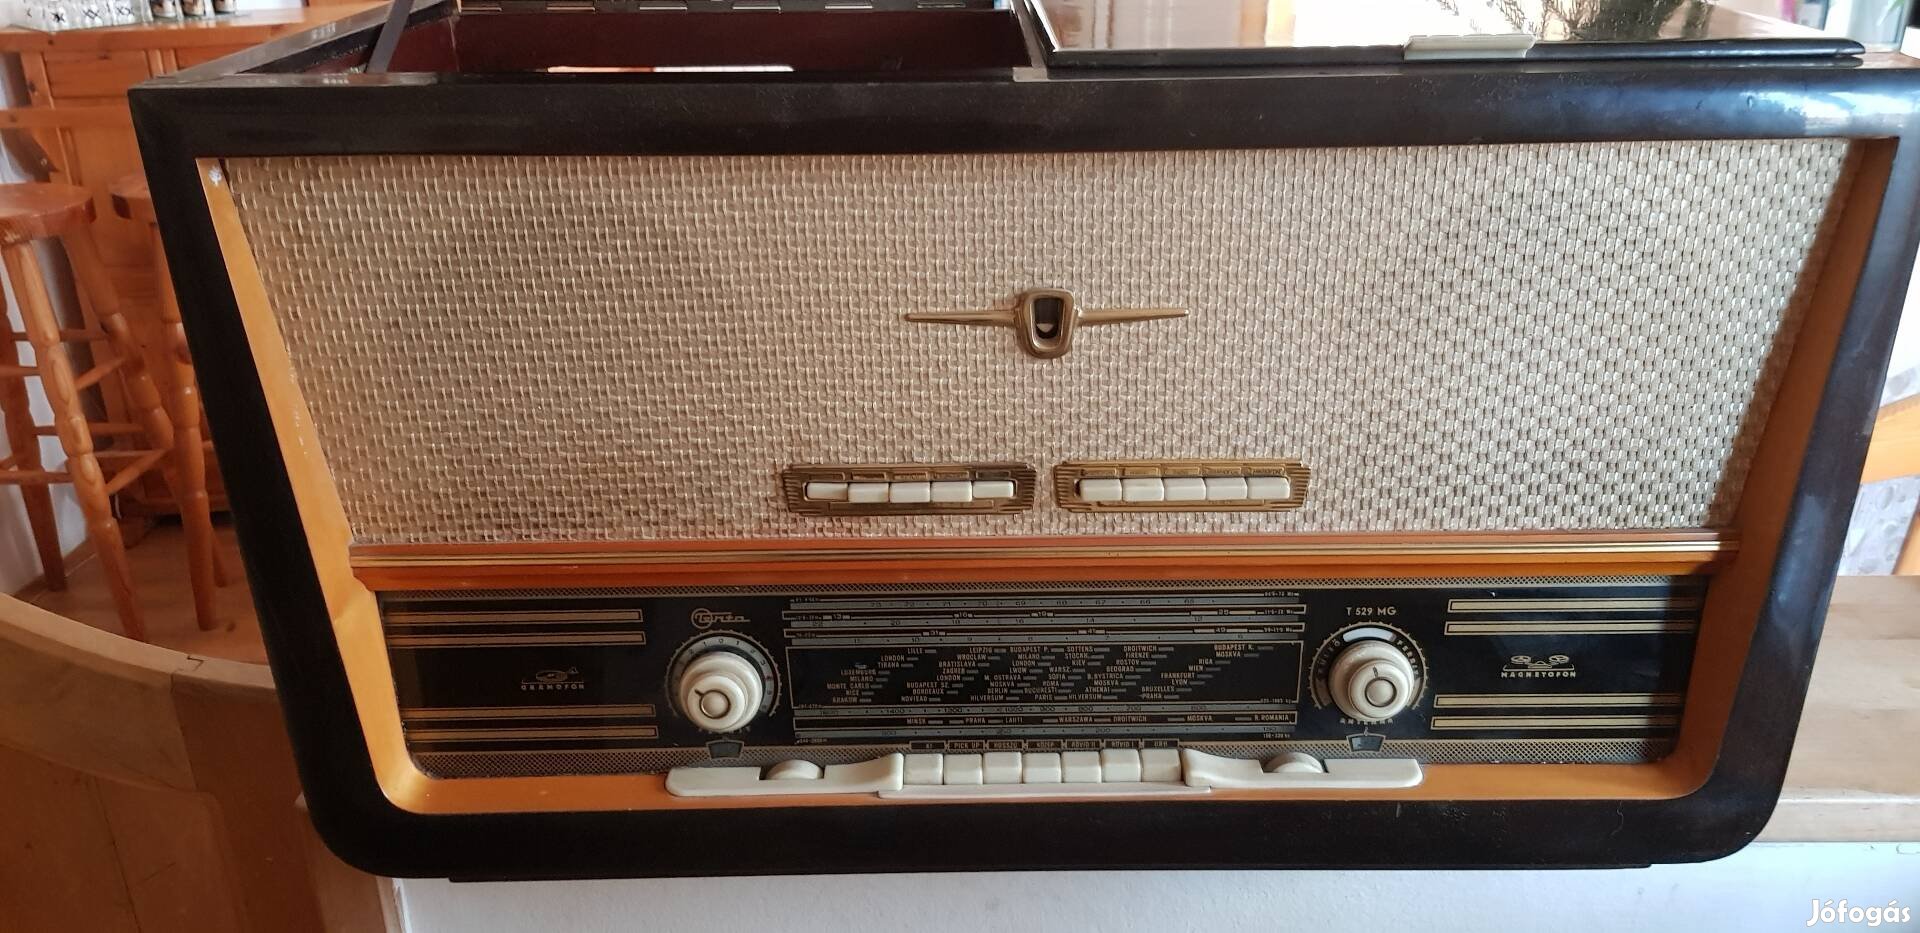 Öreg működőképes rádió.